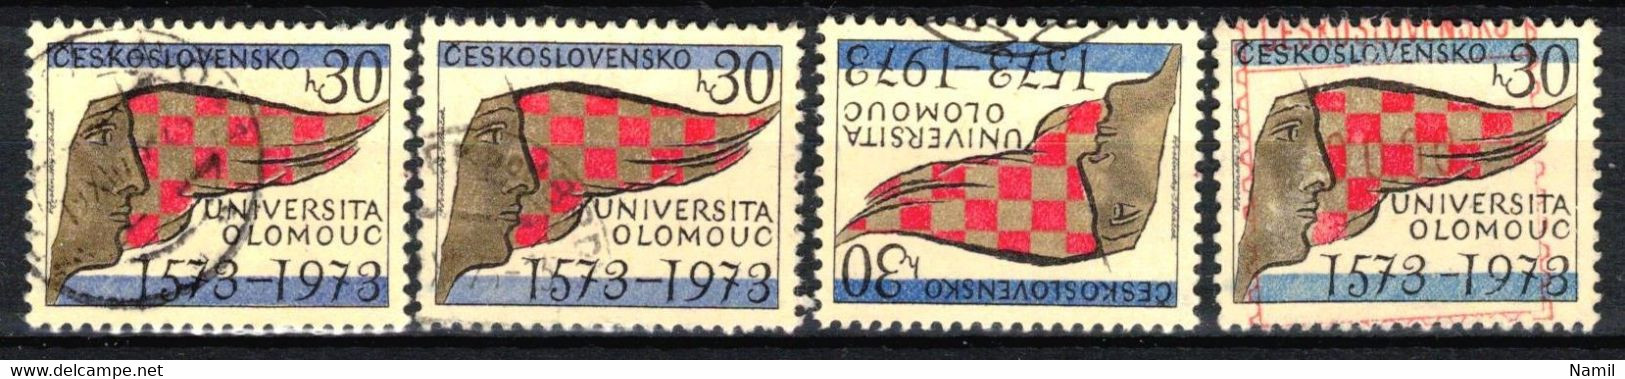 Tchécoslovaquie 1973 Mi 2153 (Yv 1992), Obliteré, Couler Bleu Diff. - Variétés Et Curiosités